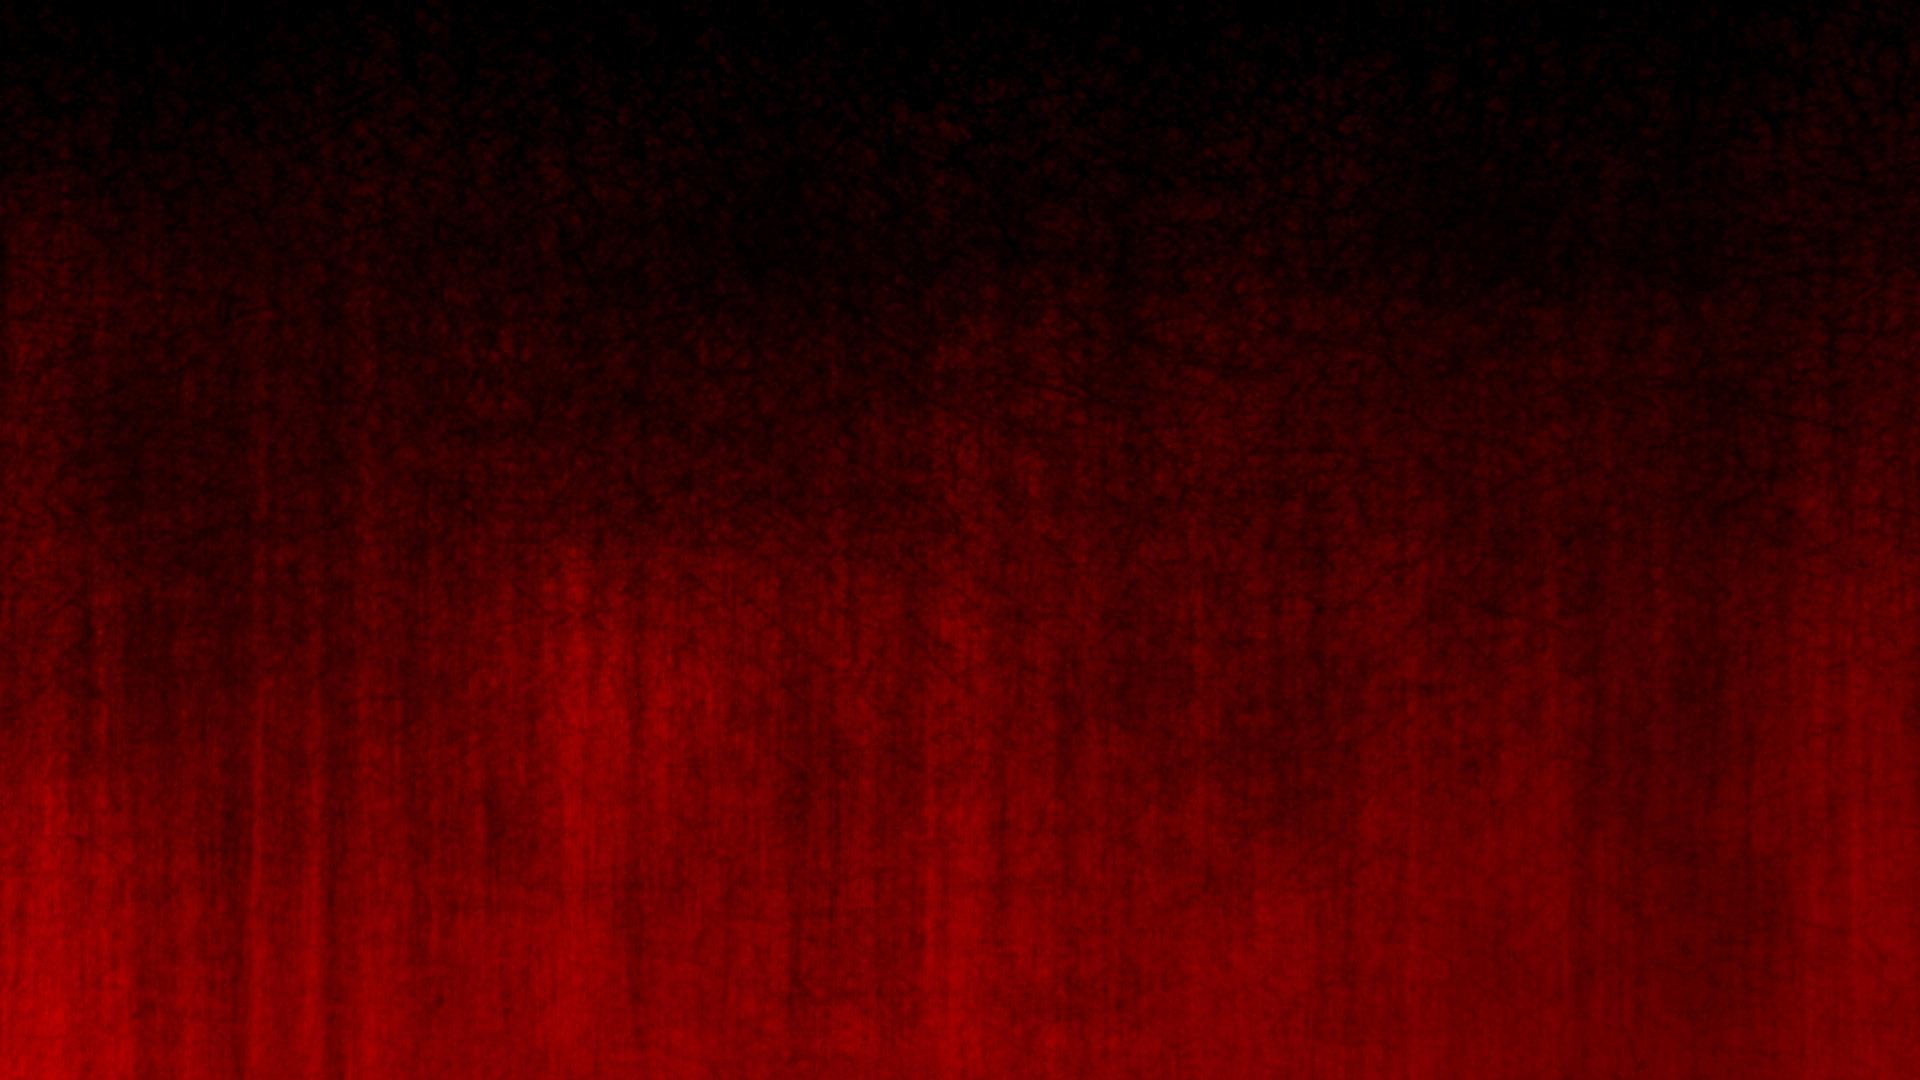 Grunge Background Dark Red Background Hd 1920x1080 Wallpaper